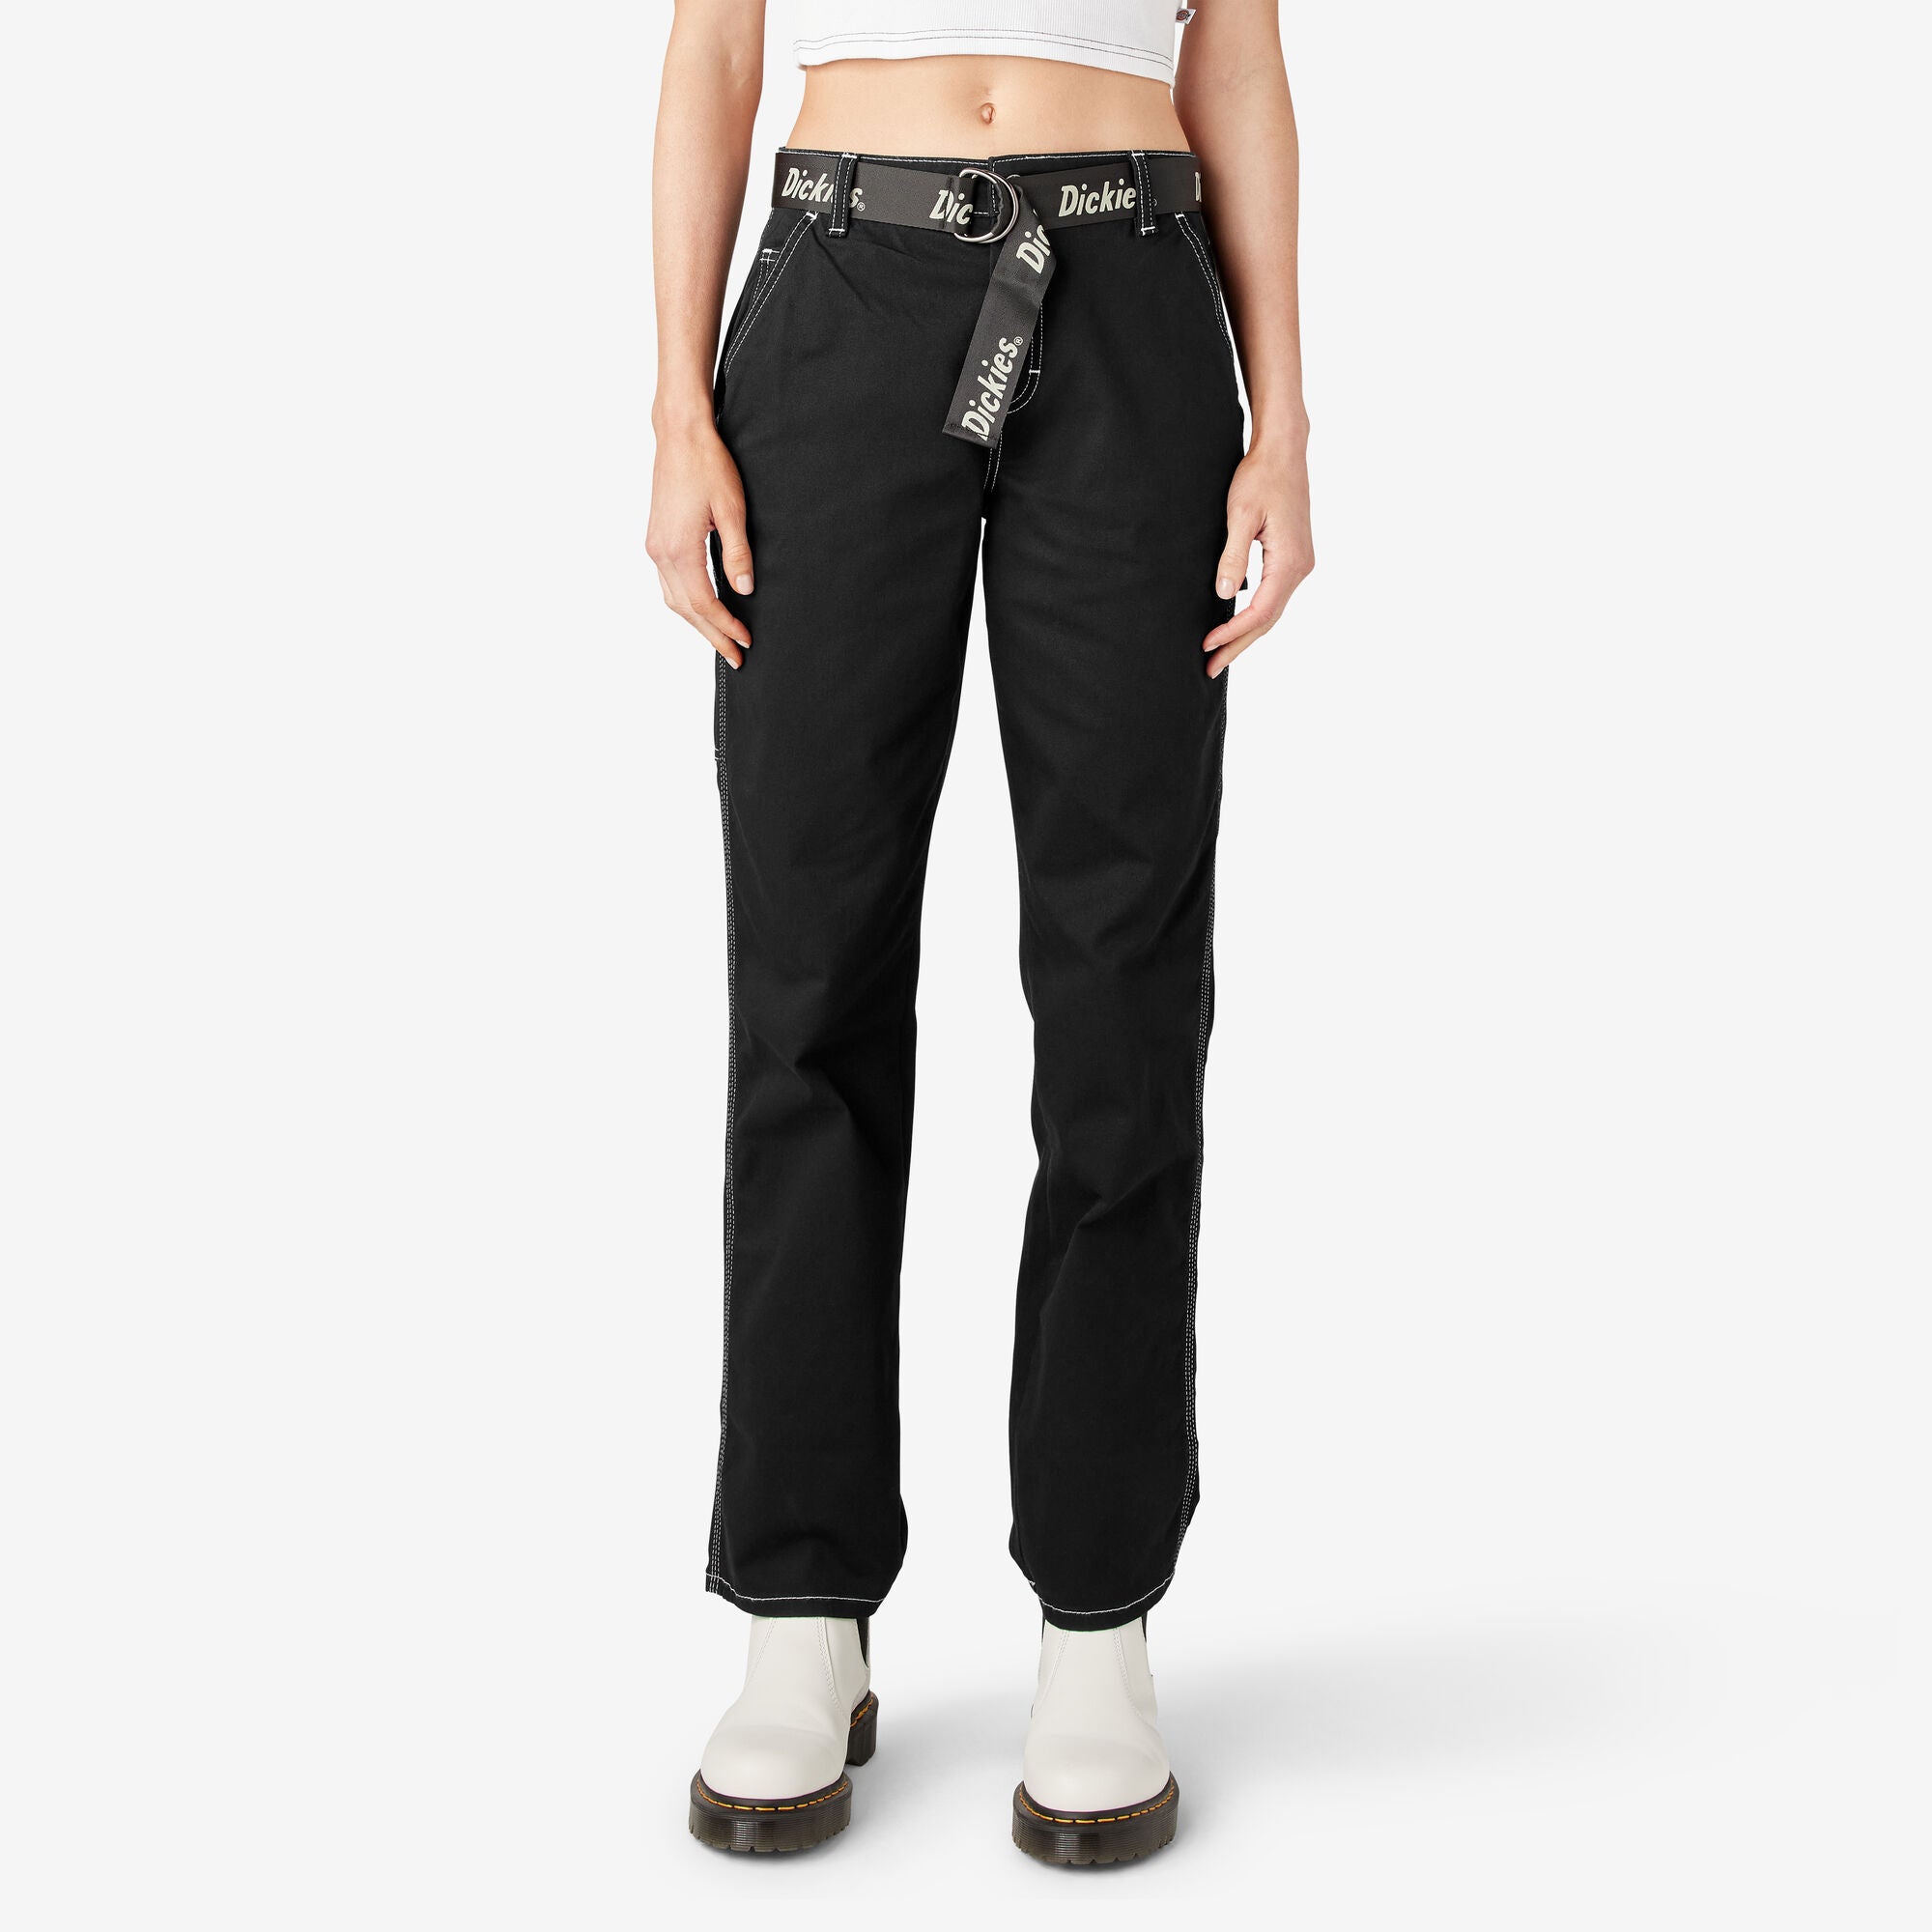 Women's 774 Dickies Original Fit Work Pants Black Size 6 Petite for